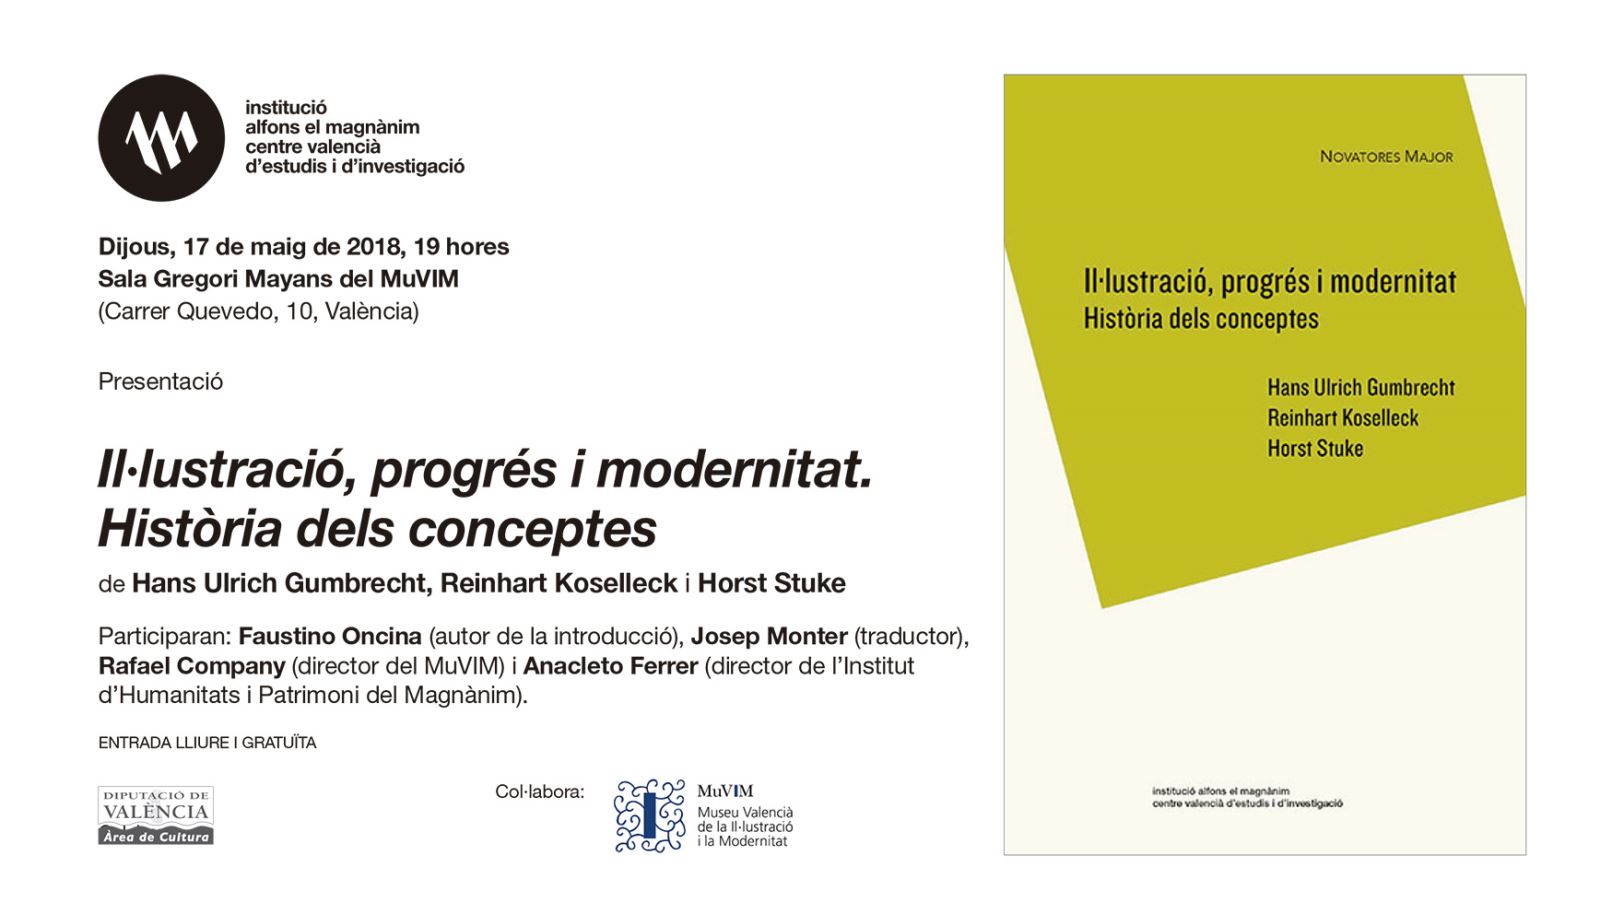 Los conceptos de Ilustración, progreso y modernidad revisados por Koselleck, Stuke y Gumbrecht